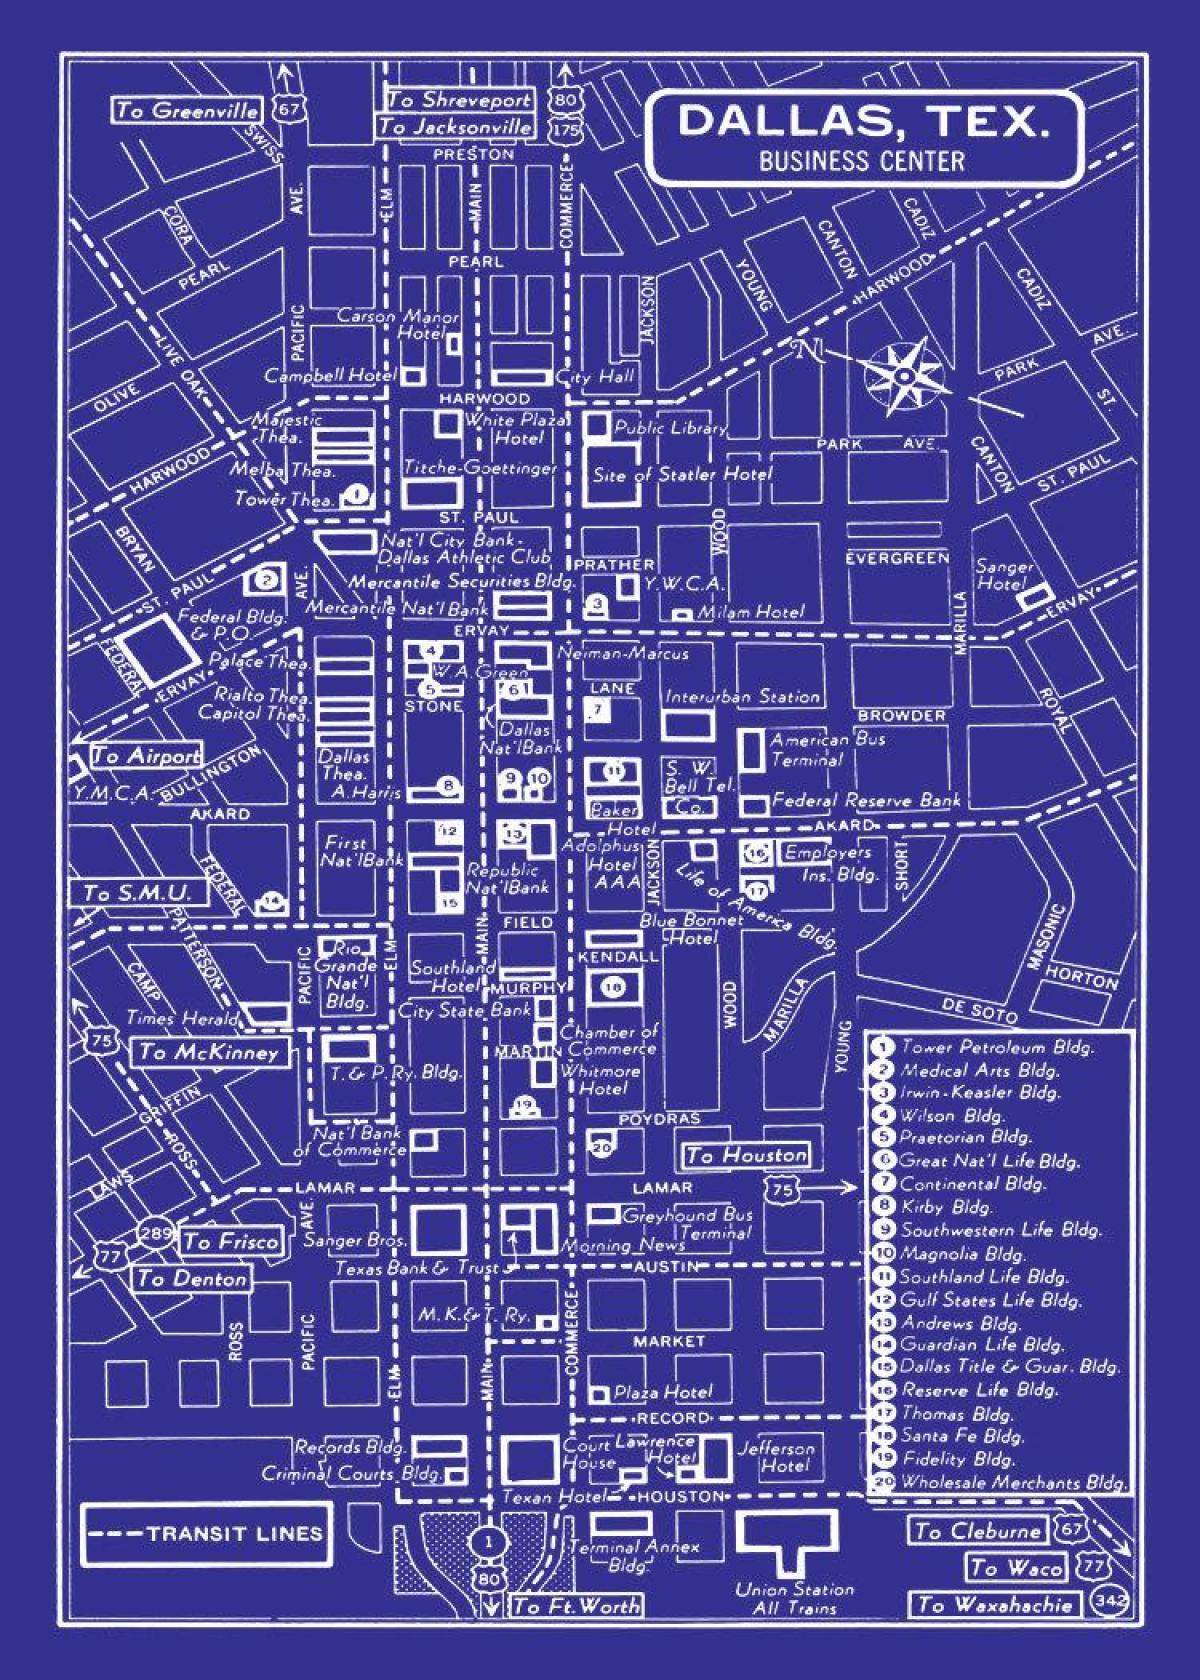 نقشہ کے شہر کے مرکز میں ہیوسٹن